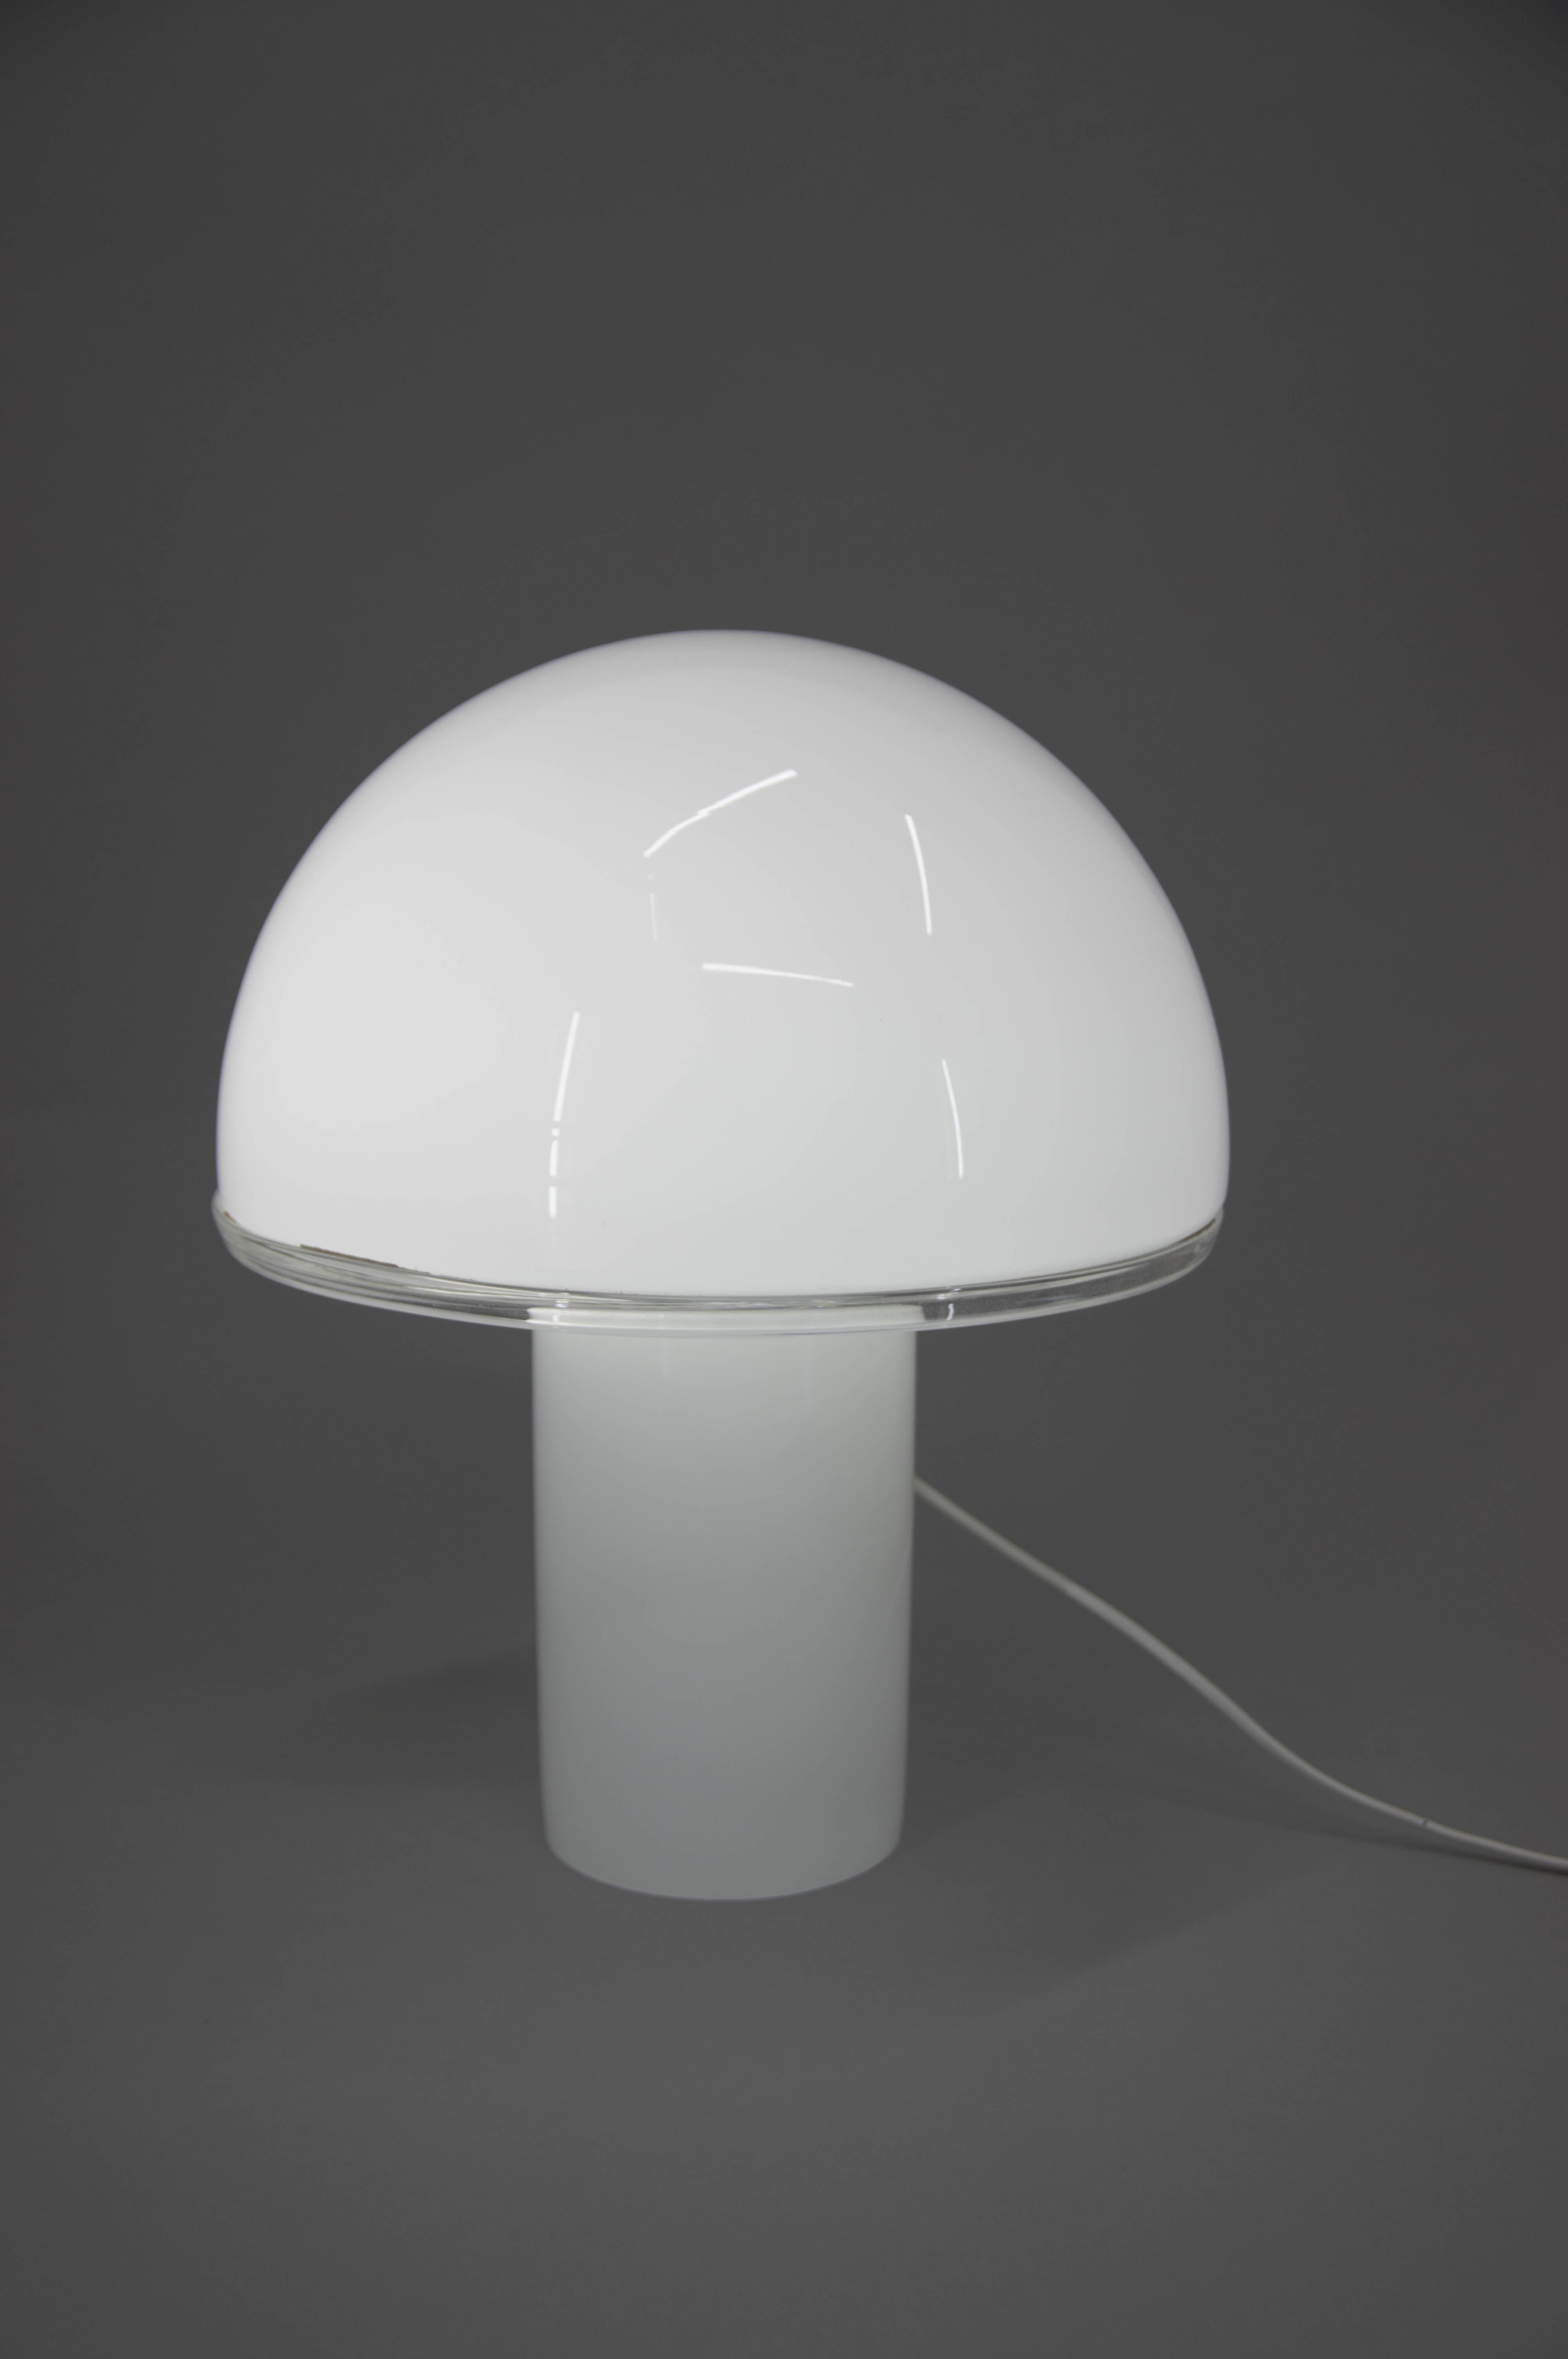 Lampe de table ou de plancher par Fontana Arte.
Jamais utilisé.
Fabriqué en Italie dans les années 2010
1x100W, ampoule E25-E27
Adaptateur pour prise américaine inclus.